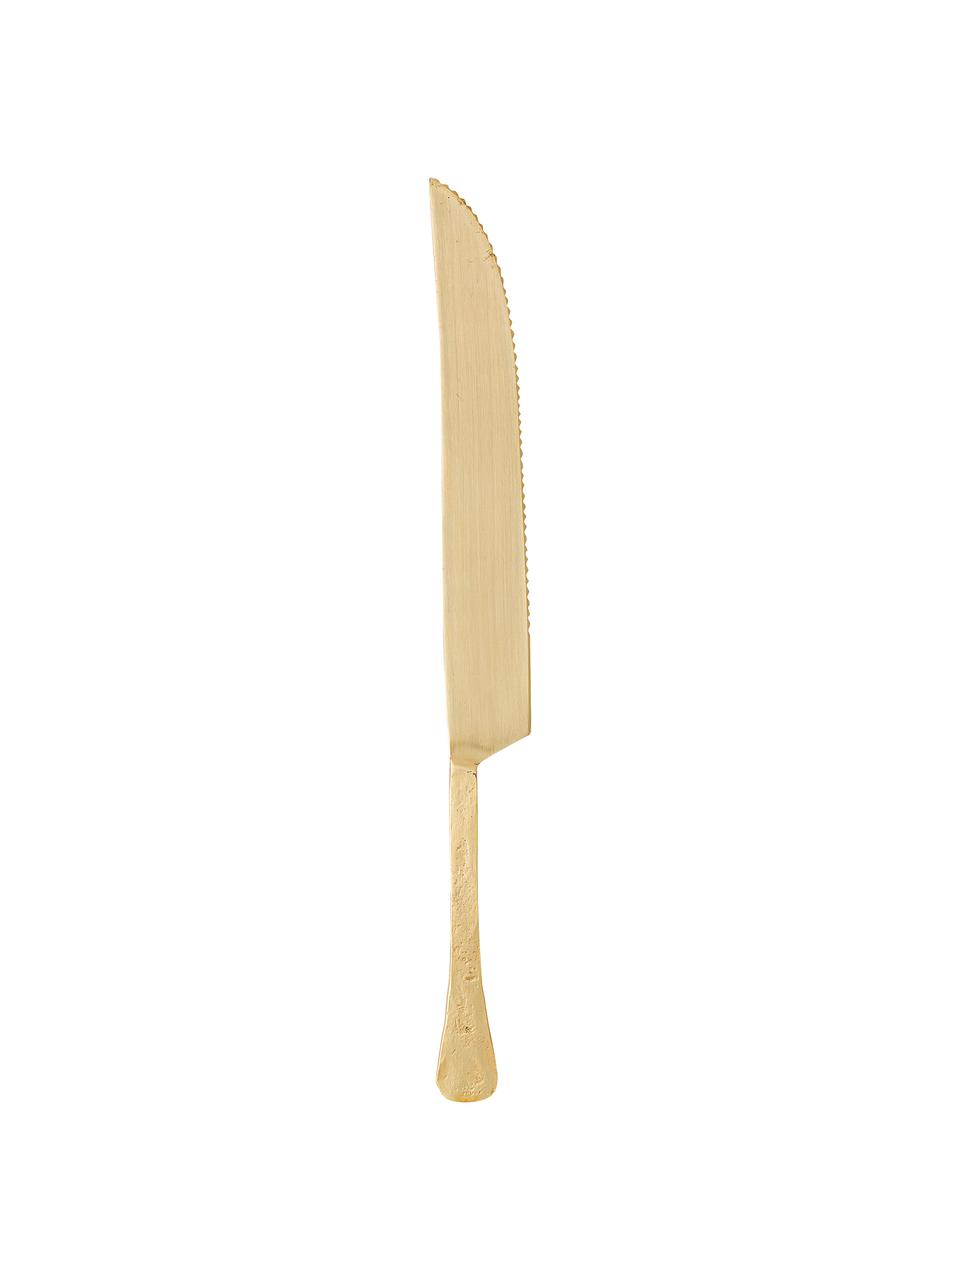 Kuchynský nôž Moni, Nehrdzavejúca oceľ 14/1, lakovaná
Príbory sú vyrobené z nehrdzavejúcej ocele. Sú teda trvácne, nehrdzavejú a sú odolné voči baktériám, Mosadzné odtiene, D 31 cm